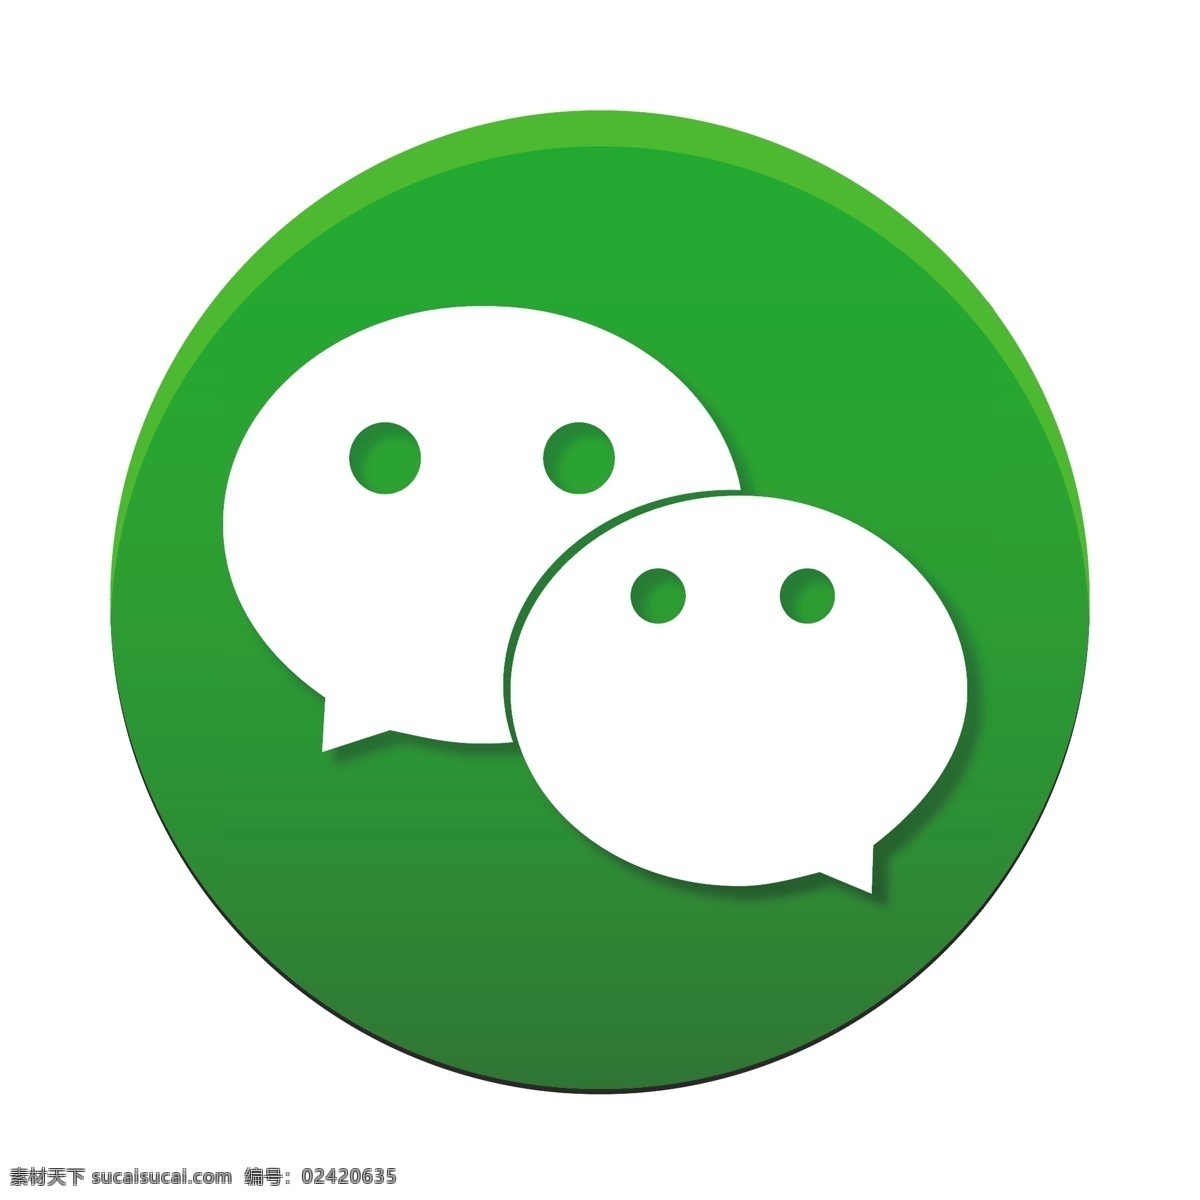 微 信 聊天 软件 logo 图标 微信 聊天软件 创意 2.5d 扁平 手机app logo图标 免抠图png 千库原创